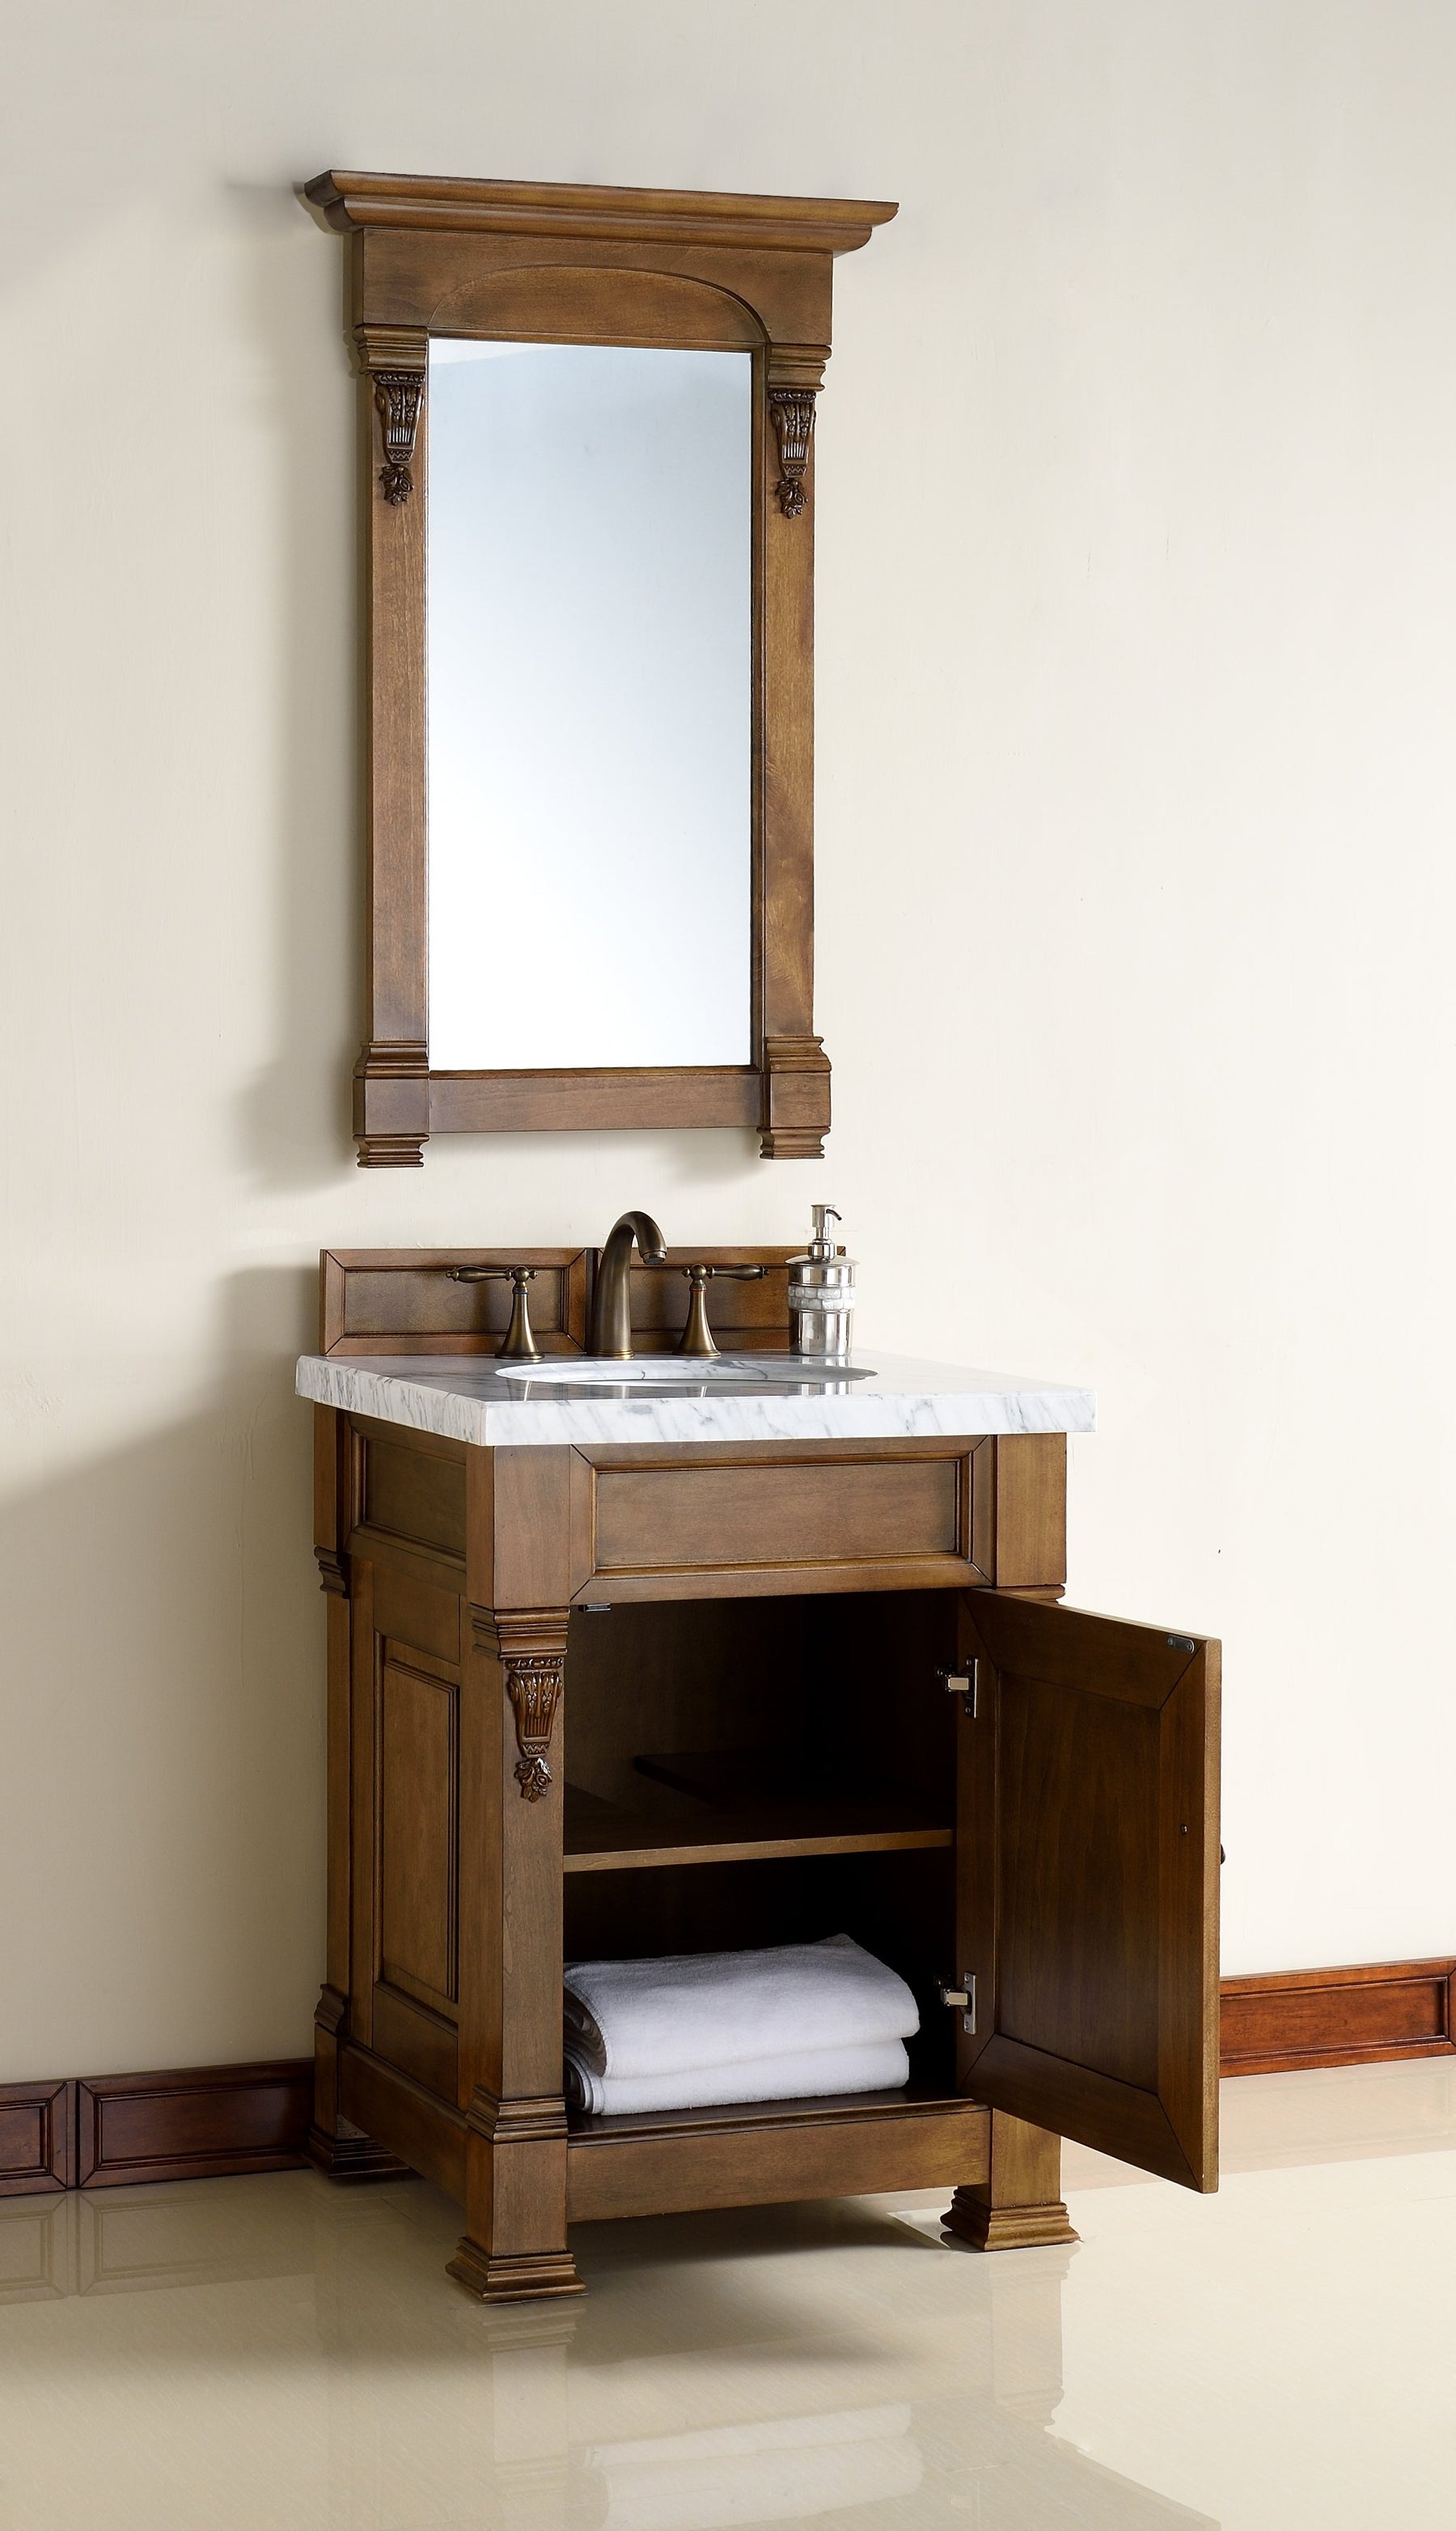 26" Brookfield Country Oak Single Bathroom Vanity, James Martin Vanities - vanitiesdepot.com